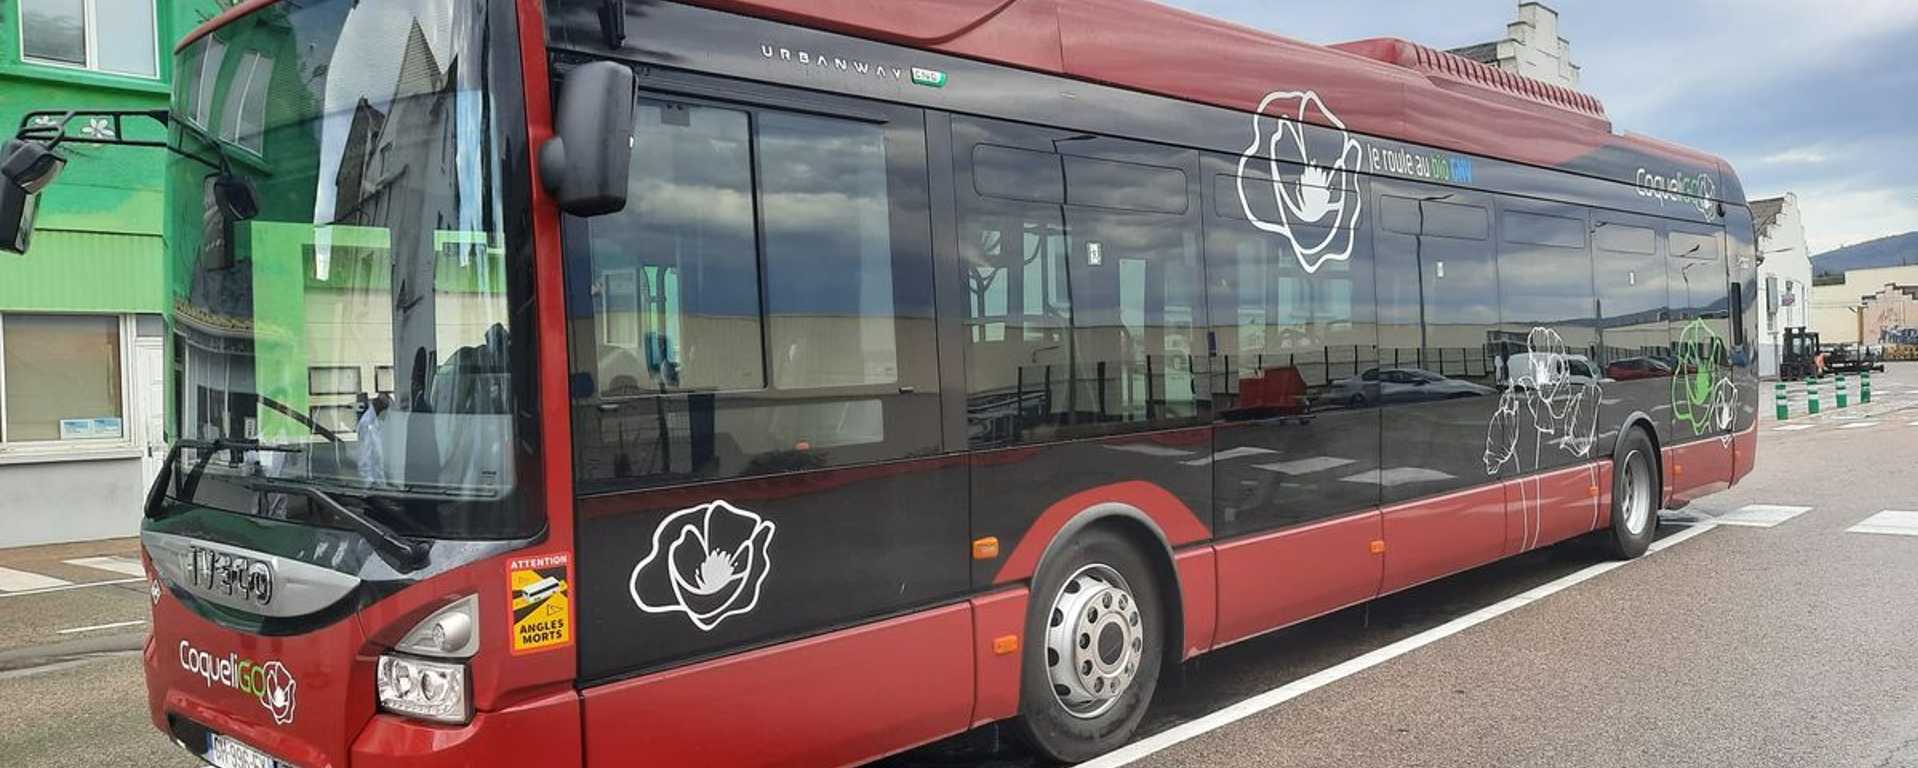 Coqueligo, bus et transports en commun à Annonay Rhône Agglo